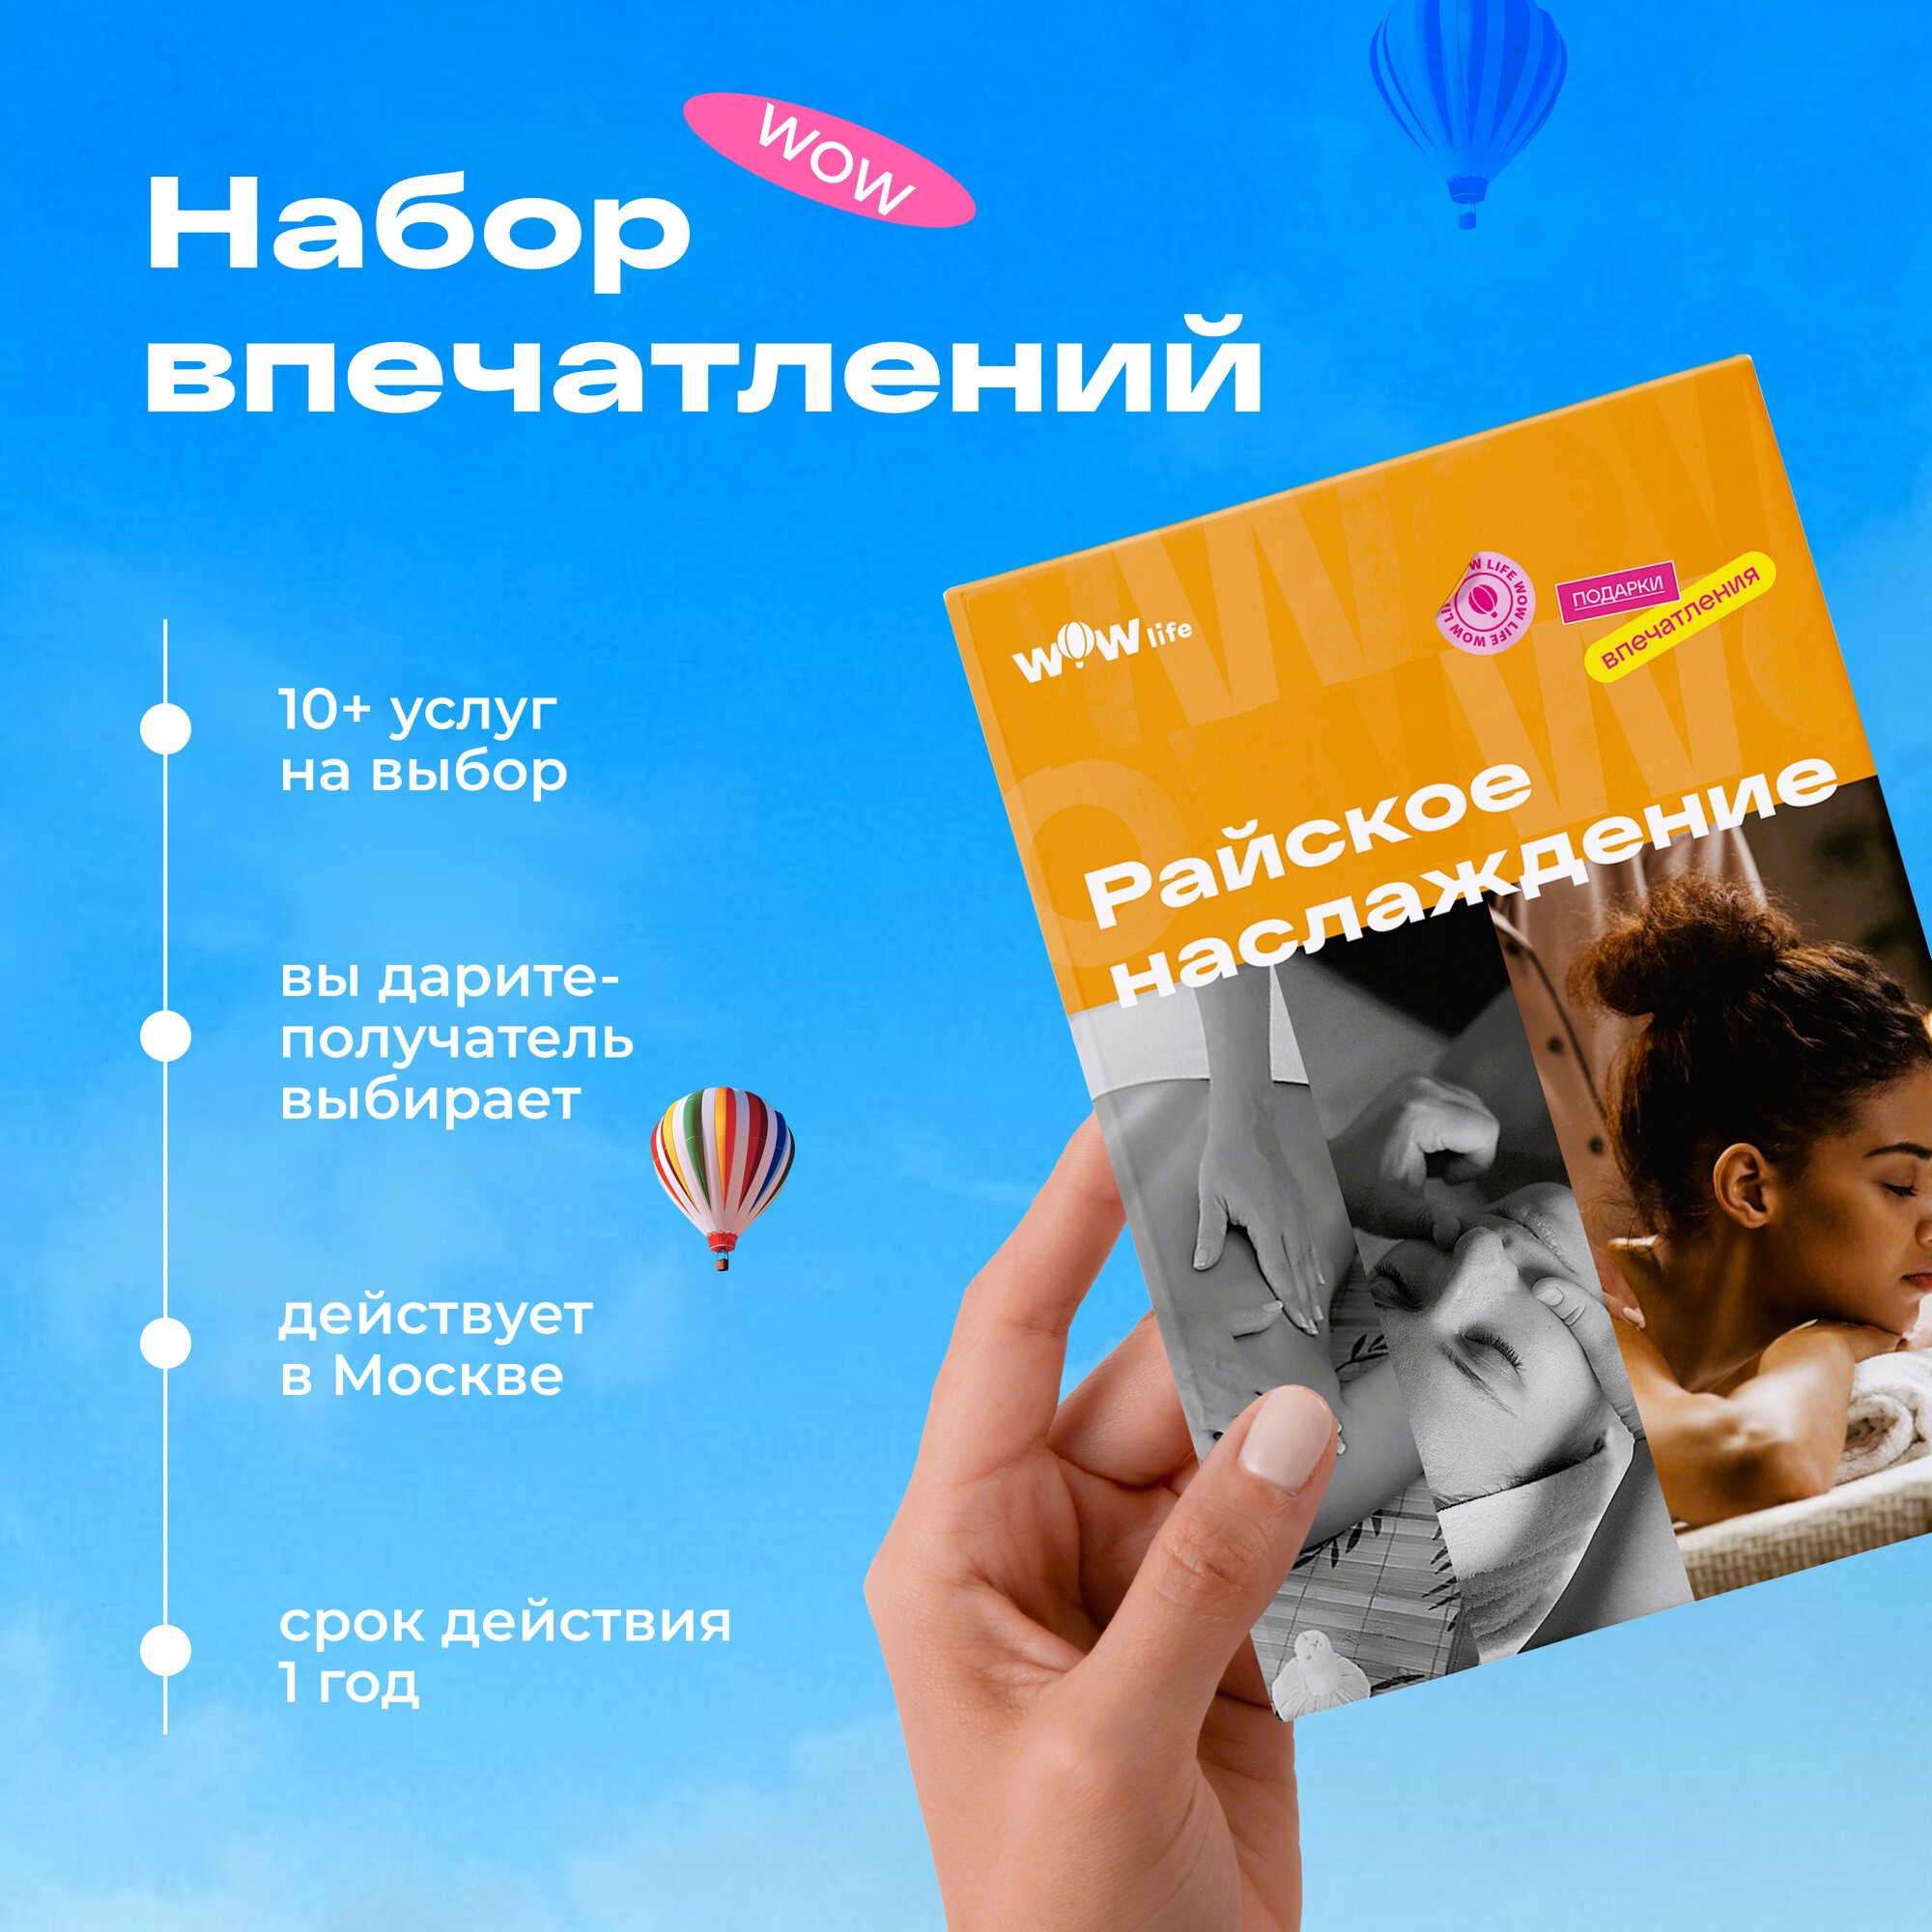 Подарочный сертификат WOWlife "Райское наслаждение" - набор из впечатлений на выбор, Москва